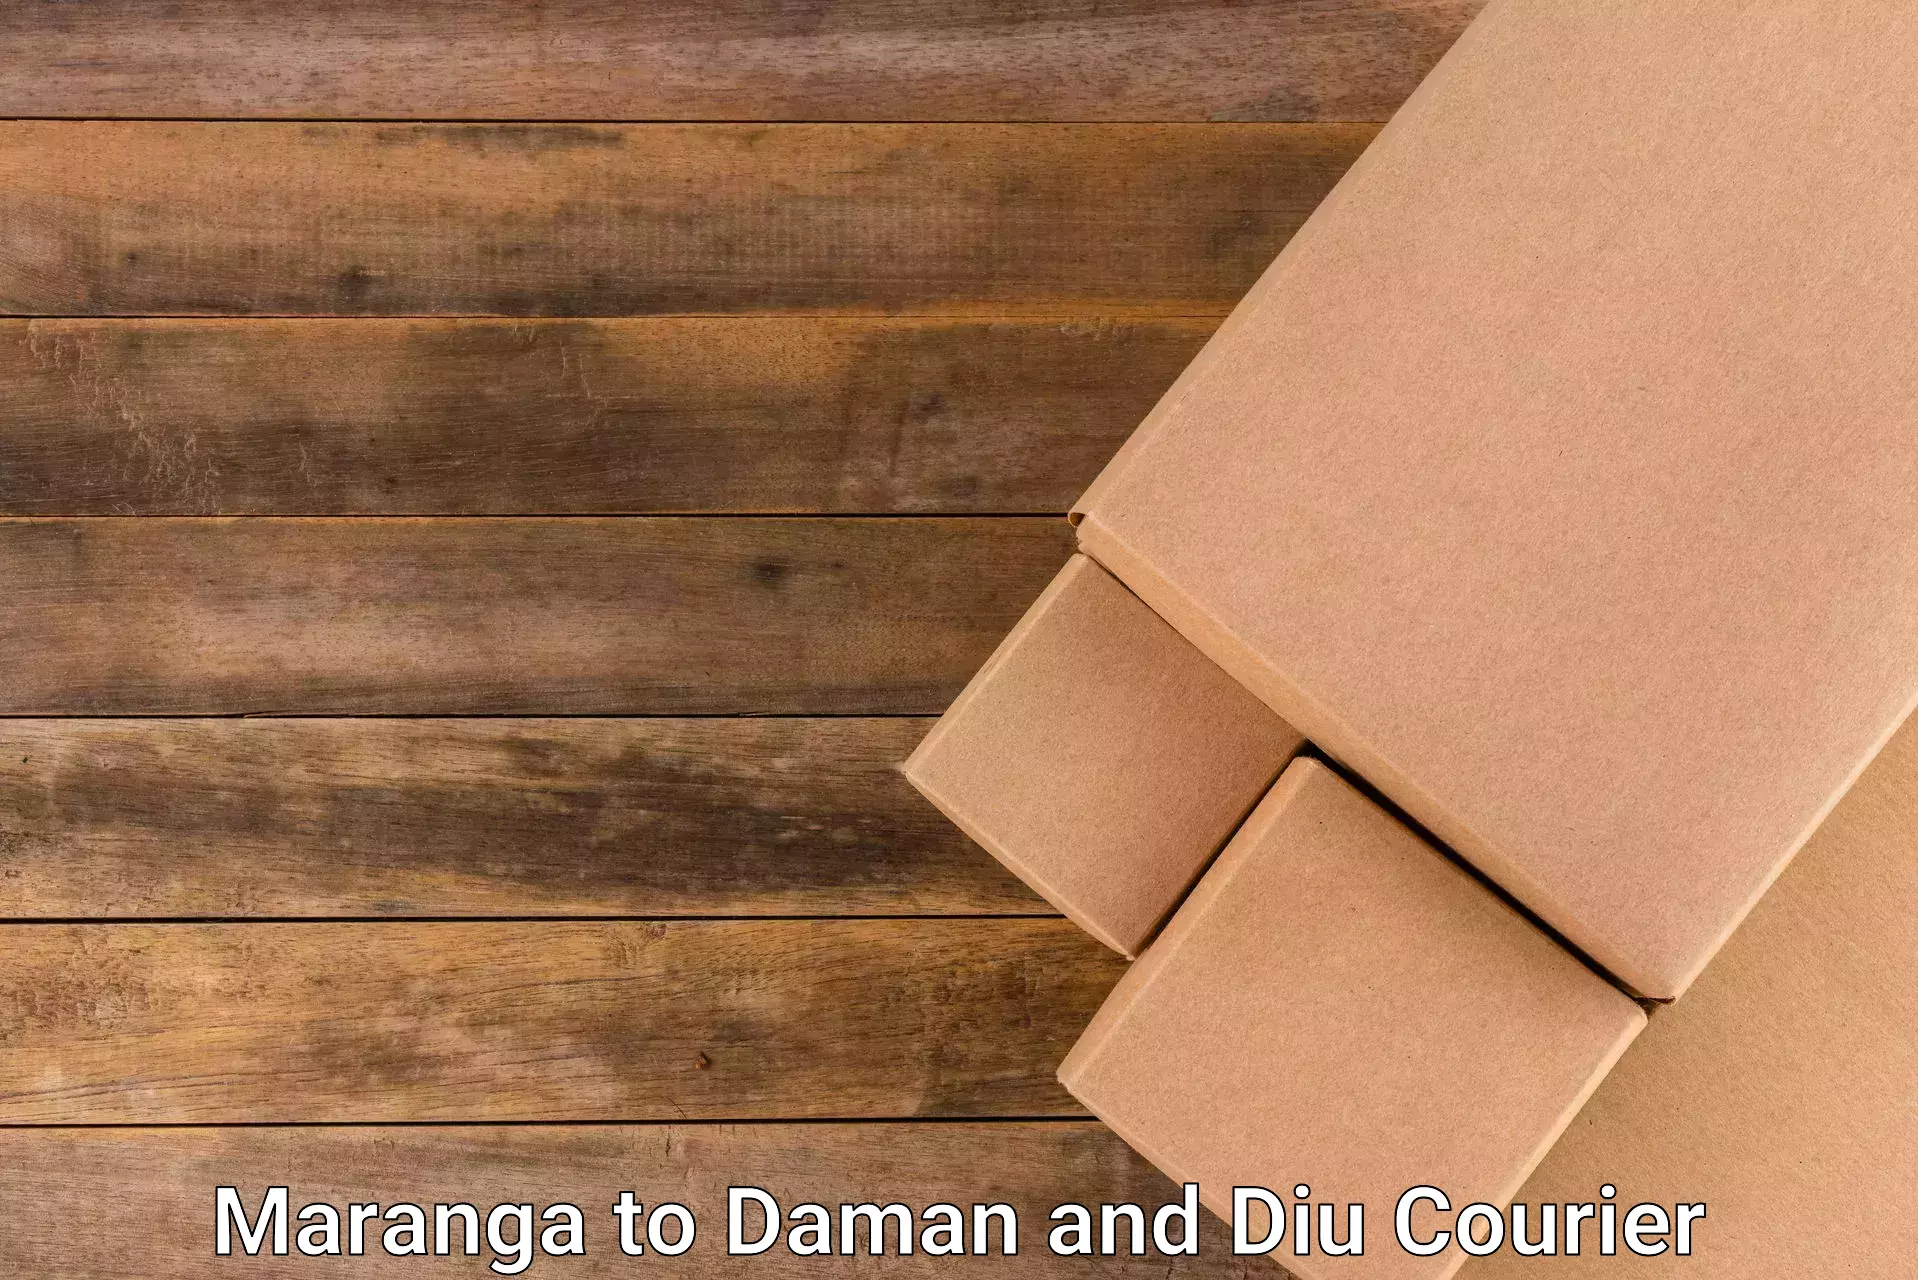 Express delivery capabilities Maranga to Diu